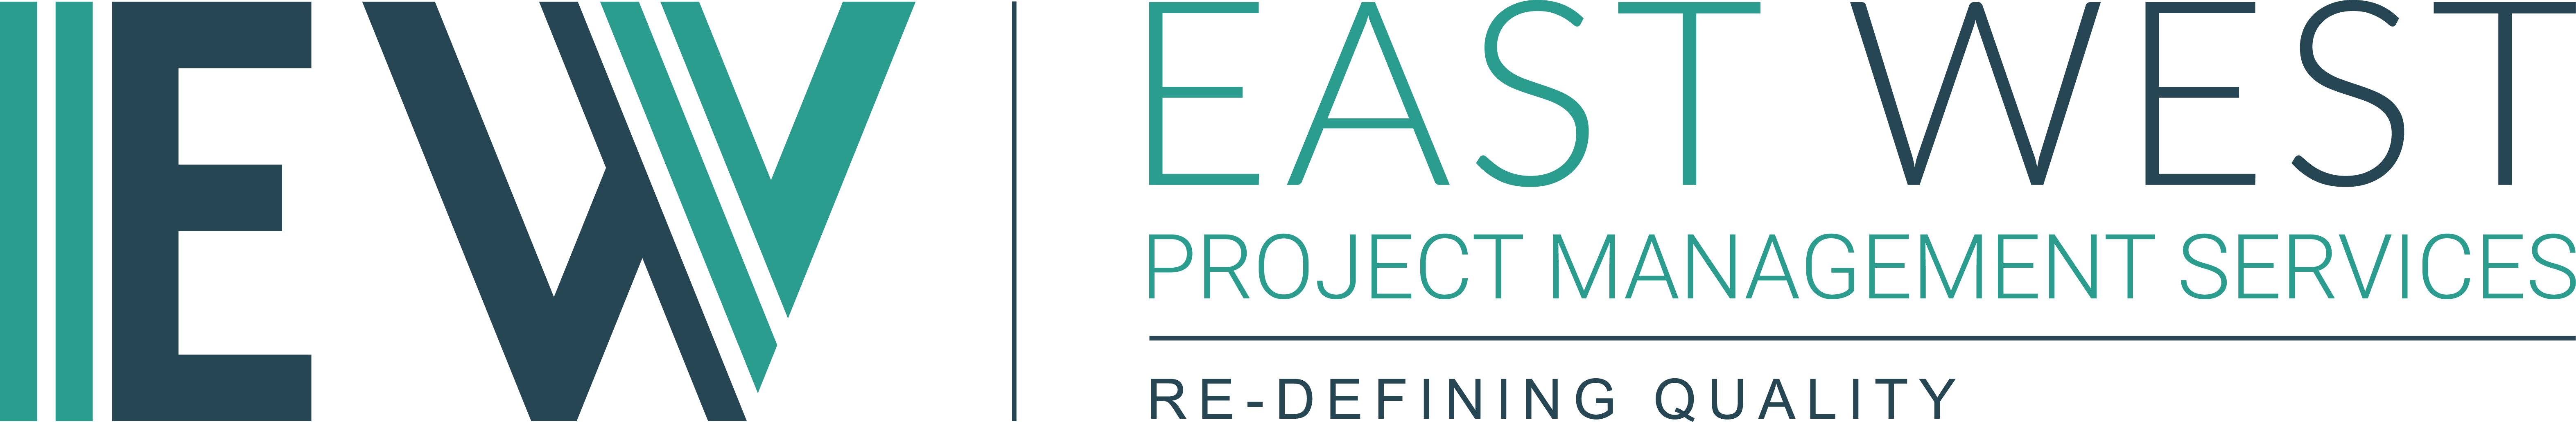 East West Project Management Services